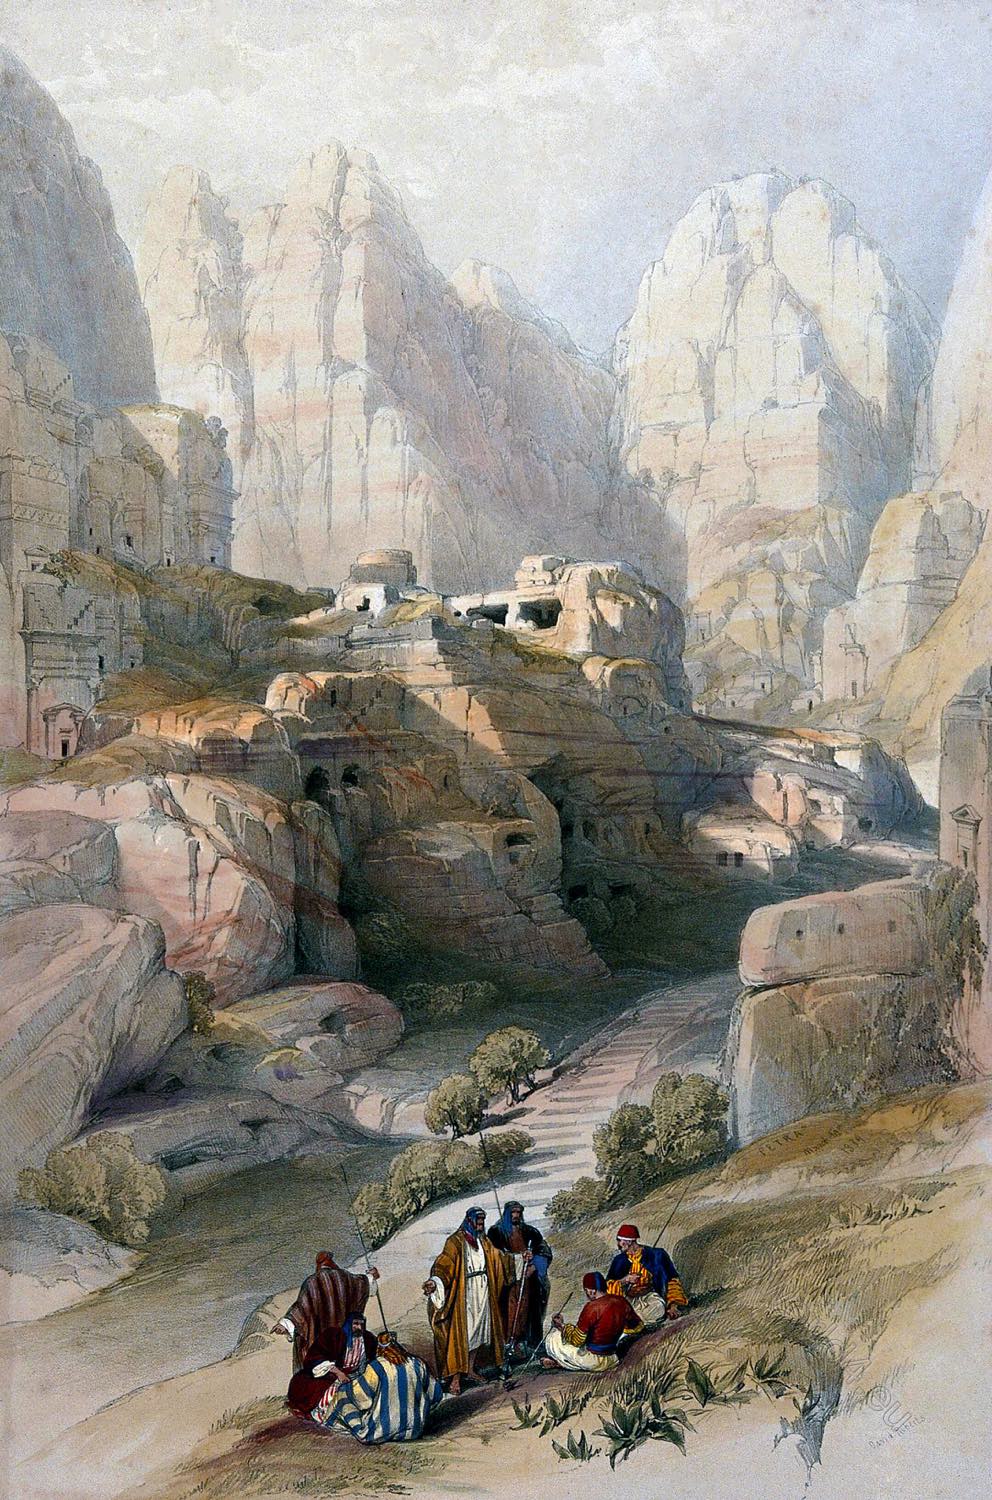 Men sitting to smoke by a ravine at Petra, Jordan.